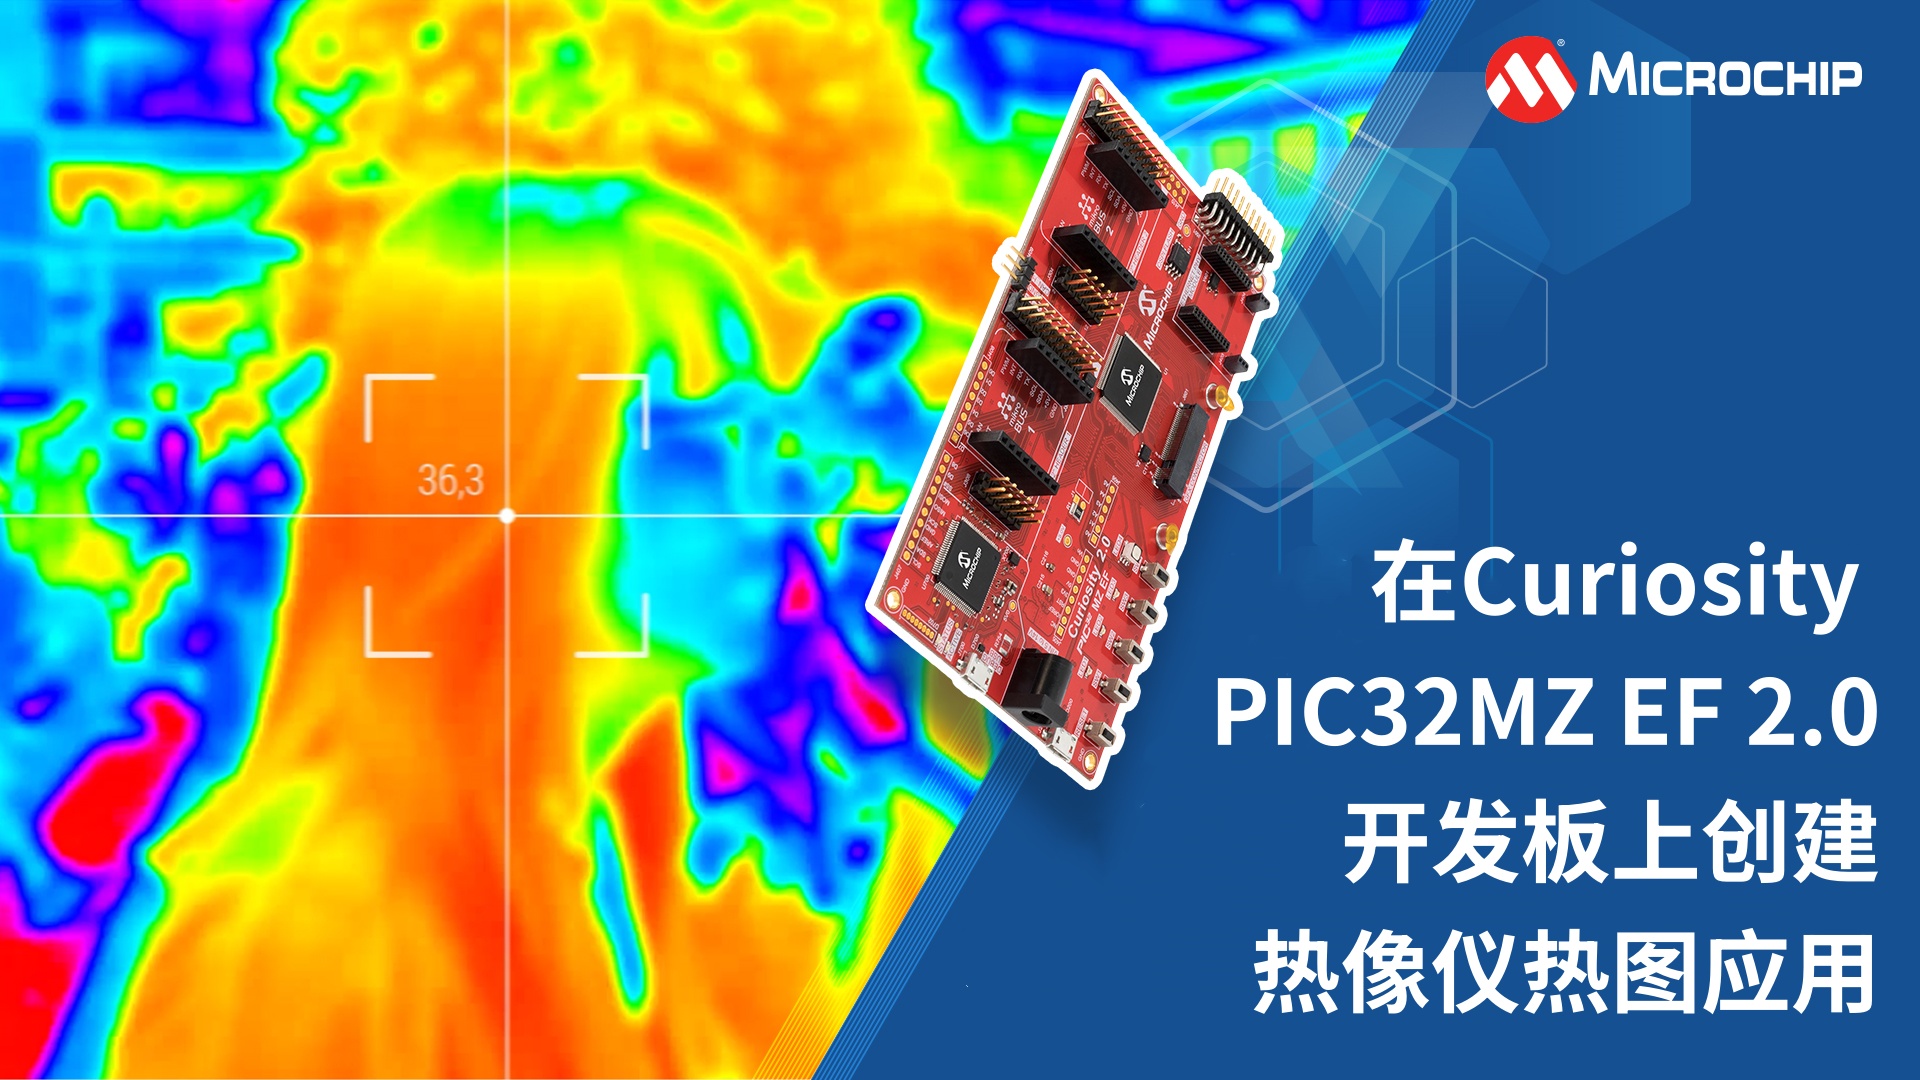 在Curiosity PIC32MZ EF 2.0开发板上创建热像仪热图应用